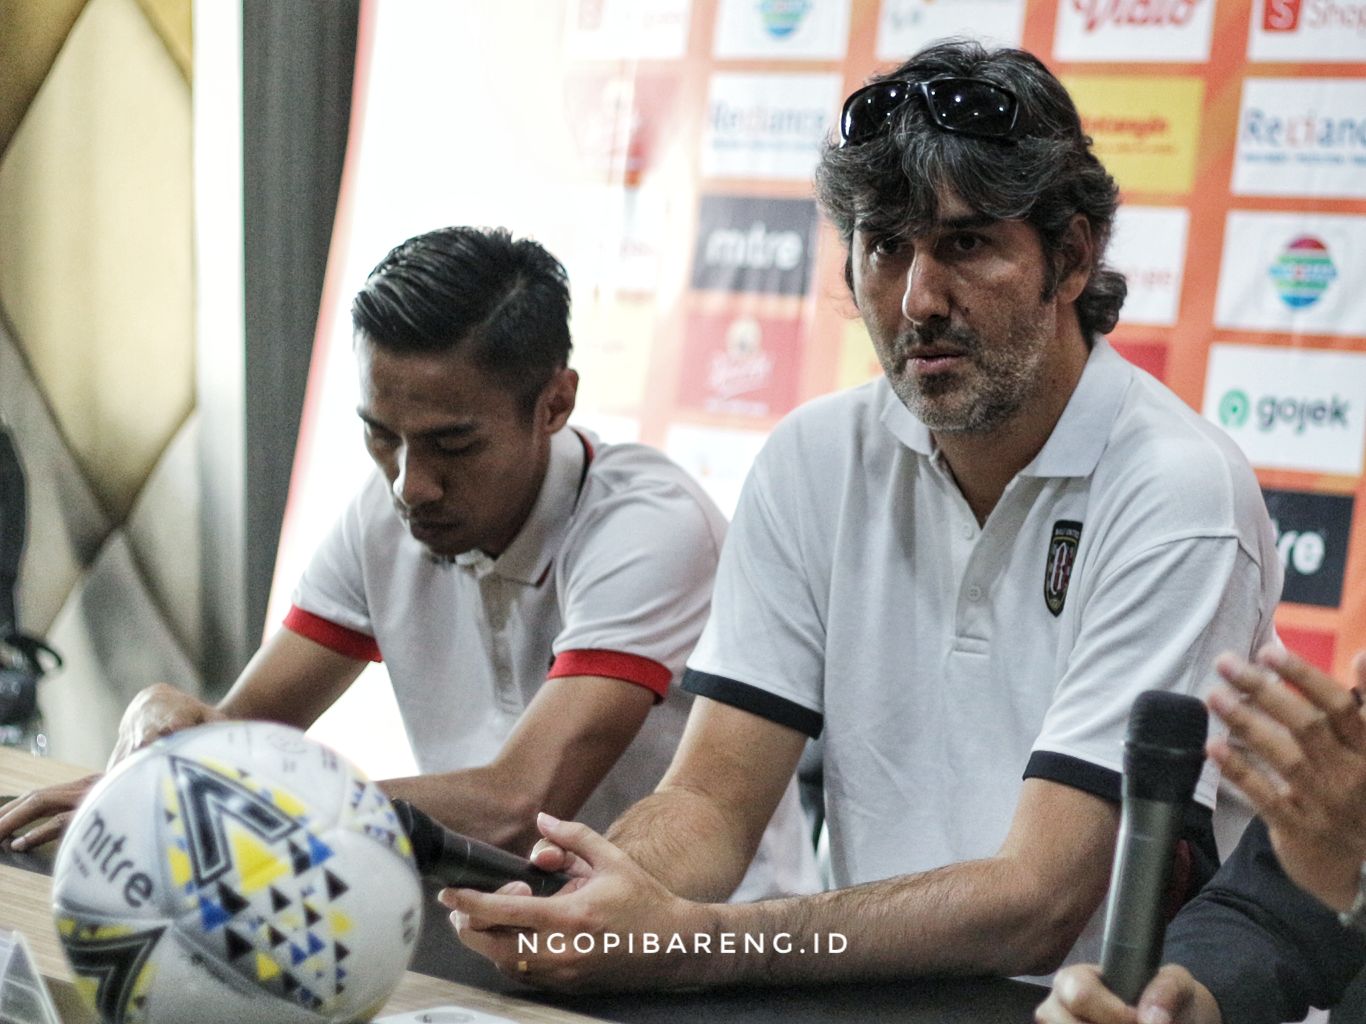 Pelatih Bali United, Stefano 'Teco' Cugura optimistis pasukannya bisa mencuri poin di kandang Persebaya. (Foto: Haris/ngopibareng.id)